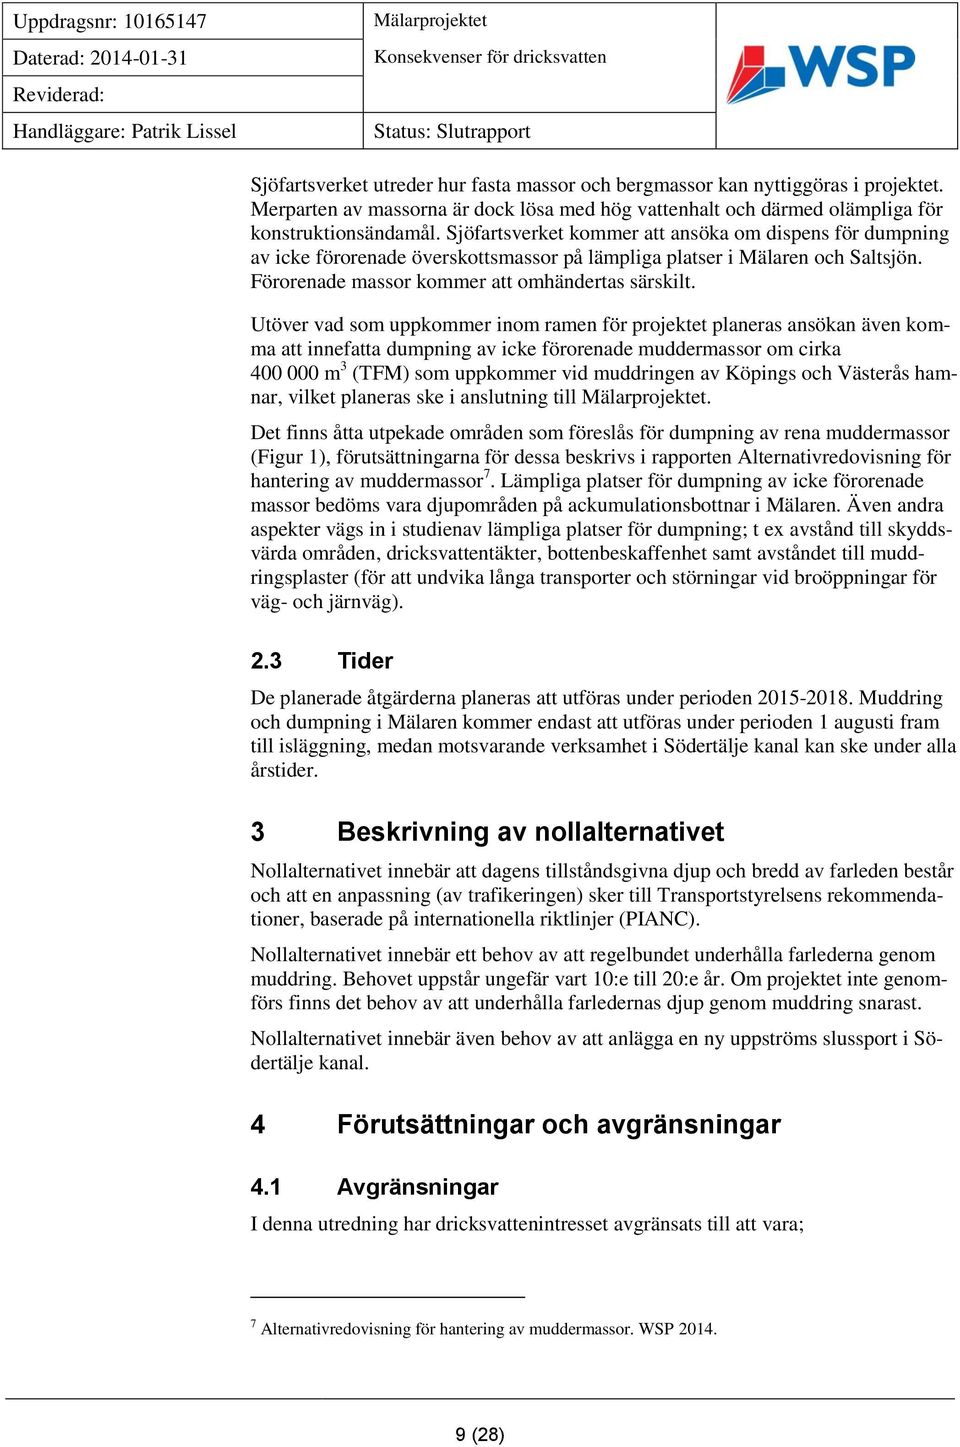 Utöver vad som uppkommer inom ramen för projektet planeras ansökan även komma att innefatta dumpning av icke förorenade muddermassor om cirka 400 000 m 3 (TFM) som uppkommer vid muddringen av Köpings